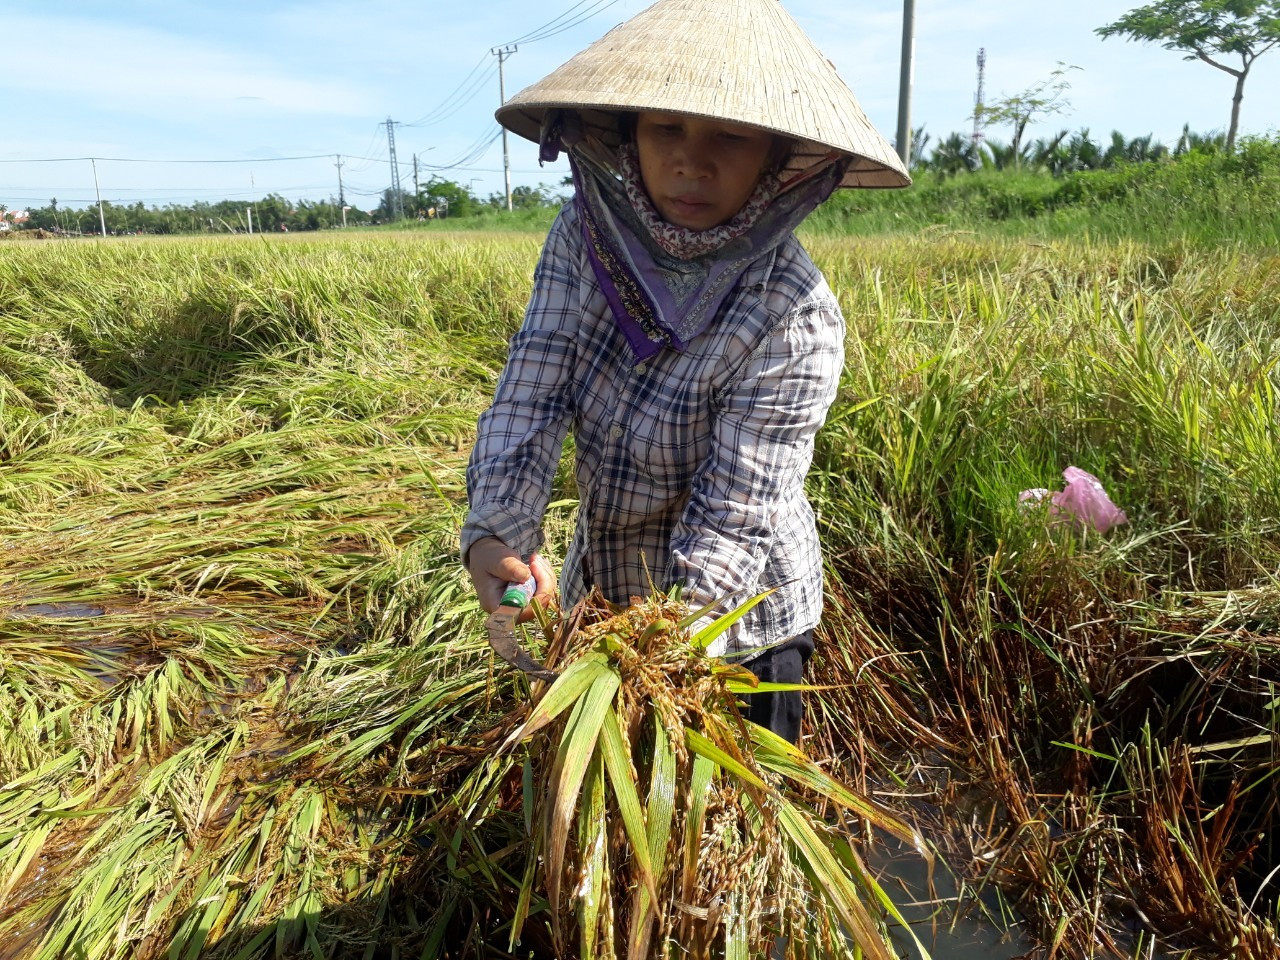 Bà Lê Thị Quy (thôn Võng Nhi, xã Cẩm Thanh) đang thu hoạch lúa tại cánh đồng Mẫu cho biết, lúa bị ngã ngã trước bão số 5 và ngâm nước hơn 20 ngày qua, bắt đầu lên mầm nên chỉ gặt về cho gia cầm ăn hoặc xoay bột nuôi gia súc.